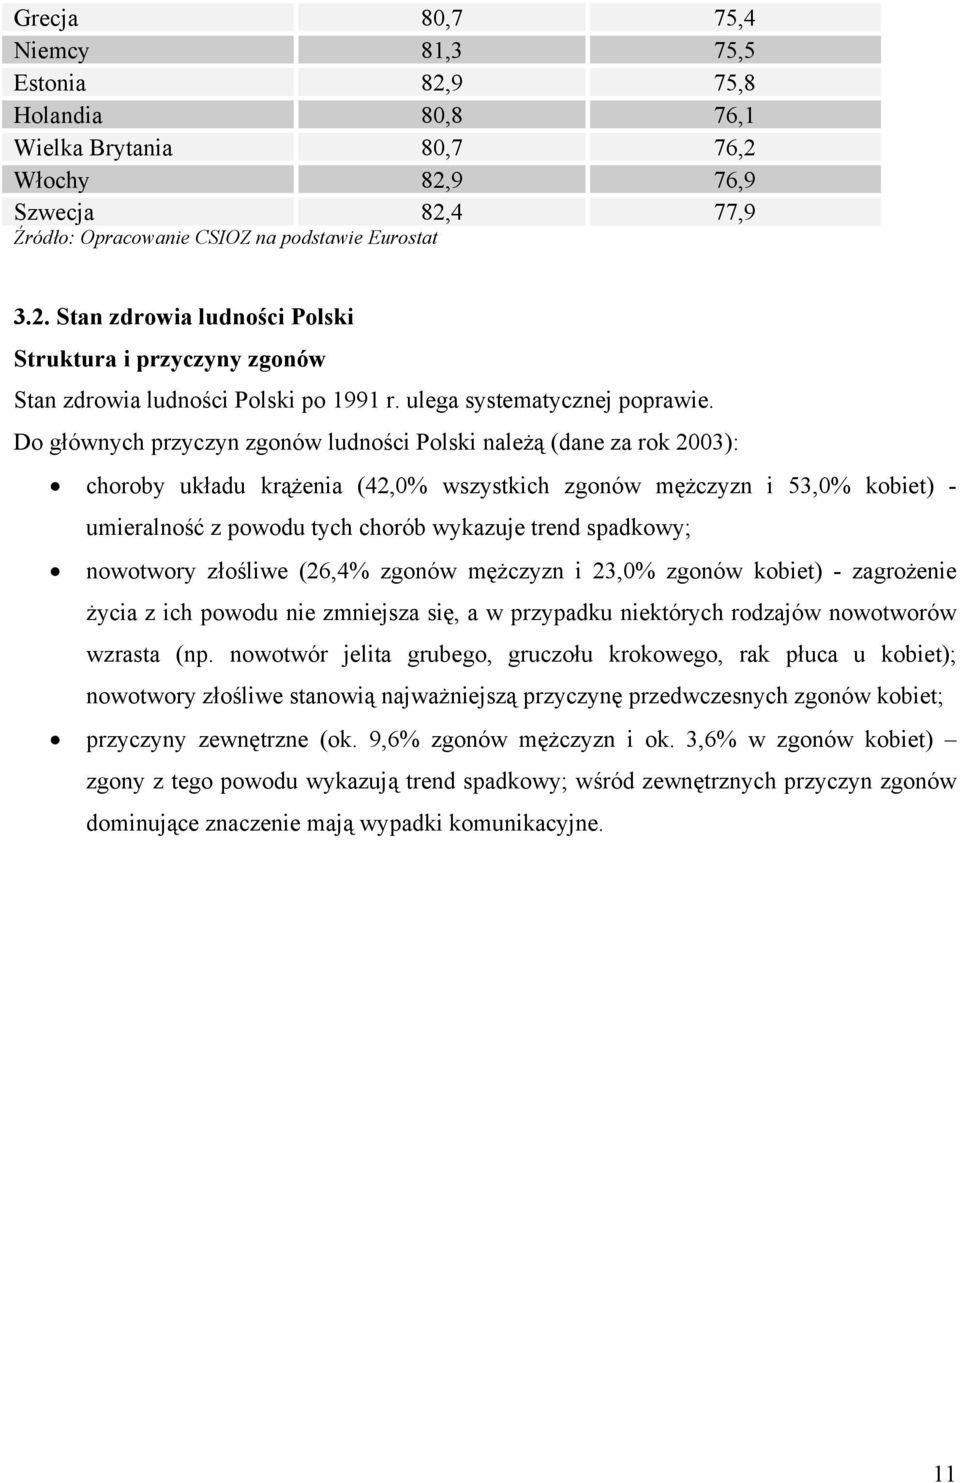 Do głównych przyczyn zgonów ludności Polski należą (dane za rok 2003): choroby układu krążenia (42,0% wszystkich zgonów mężczyzn i 53,0% kobiet) - umieralność z powodu tych chorób wykazuje trend